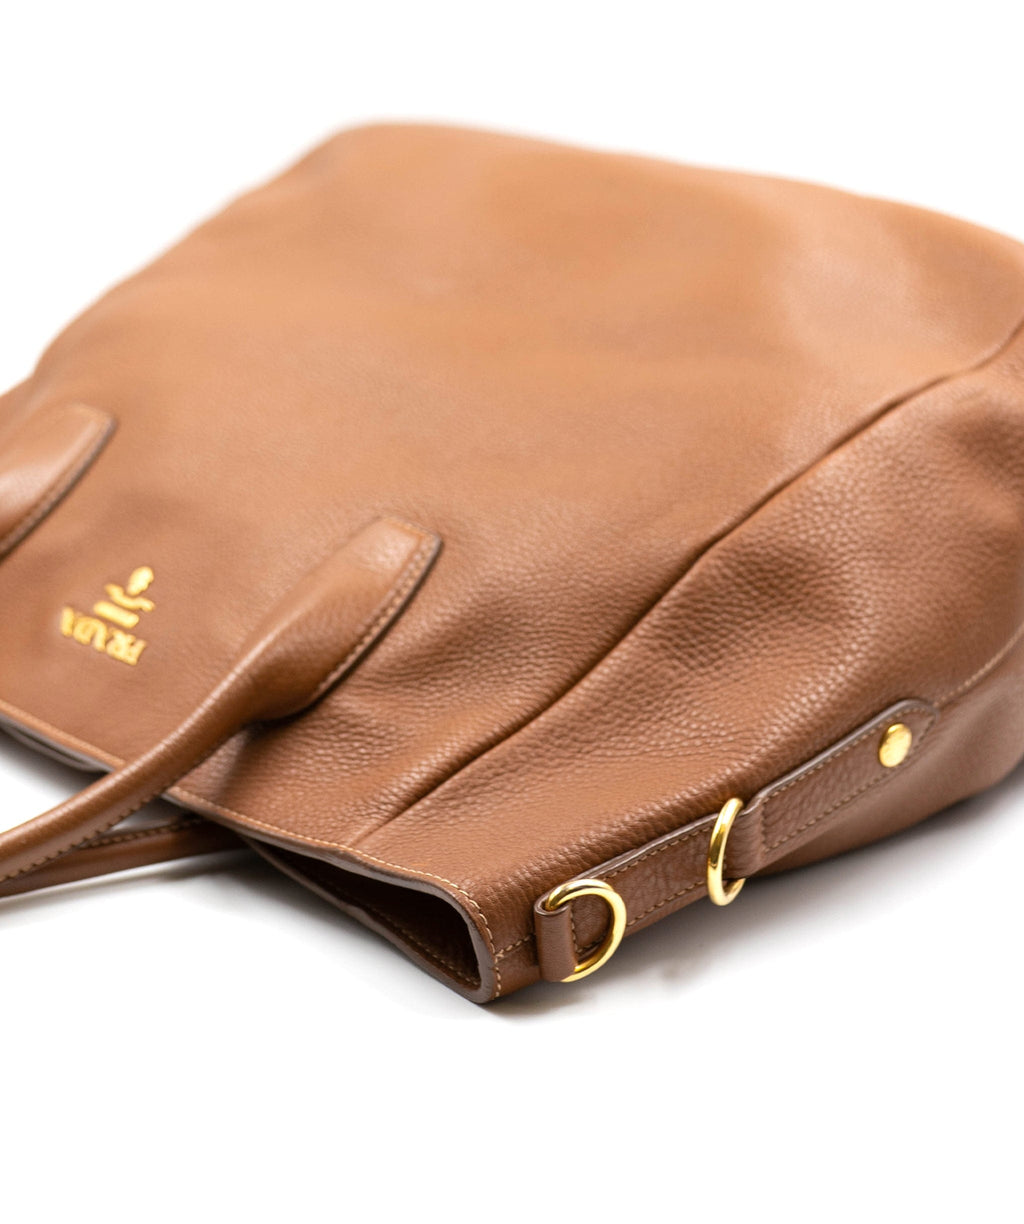 Prada Tote Bag Brown Leather | Prada tote bag, Prada tote, Leather